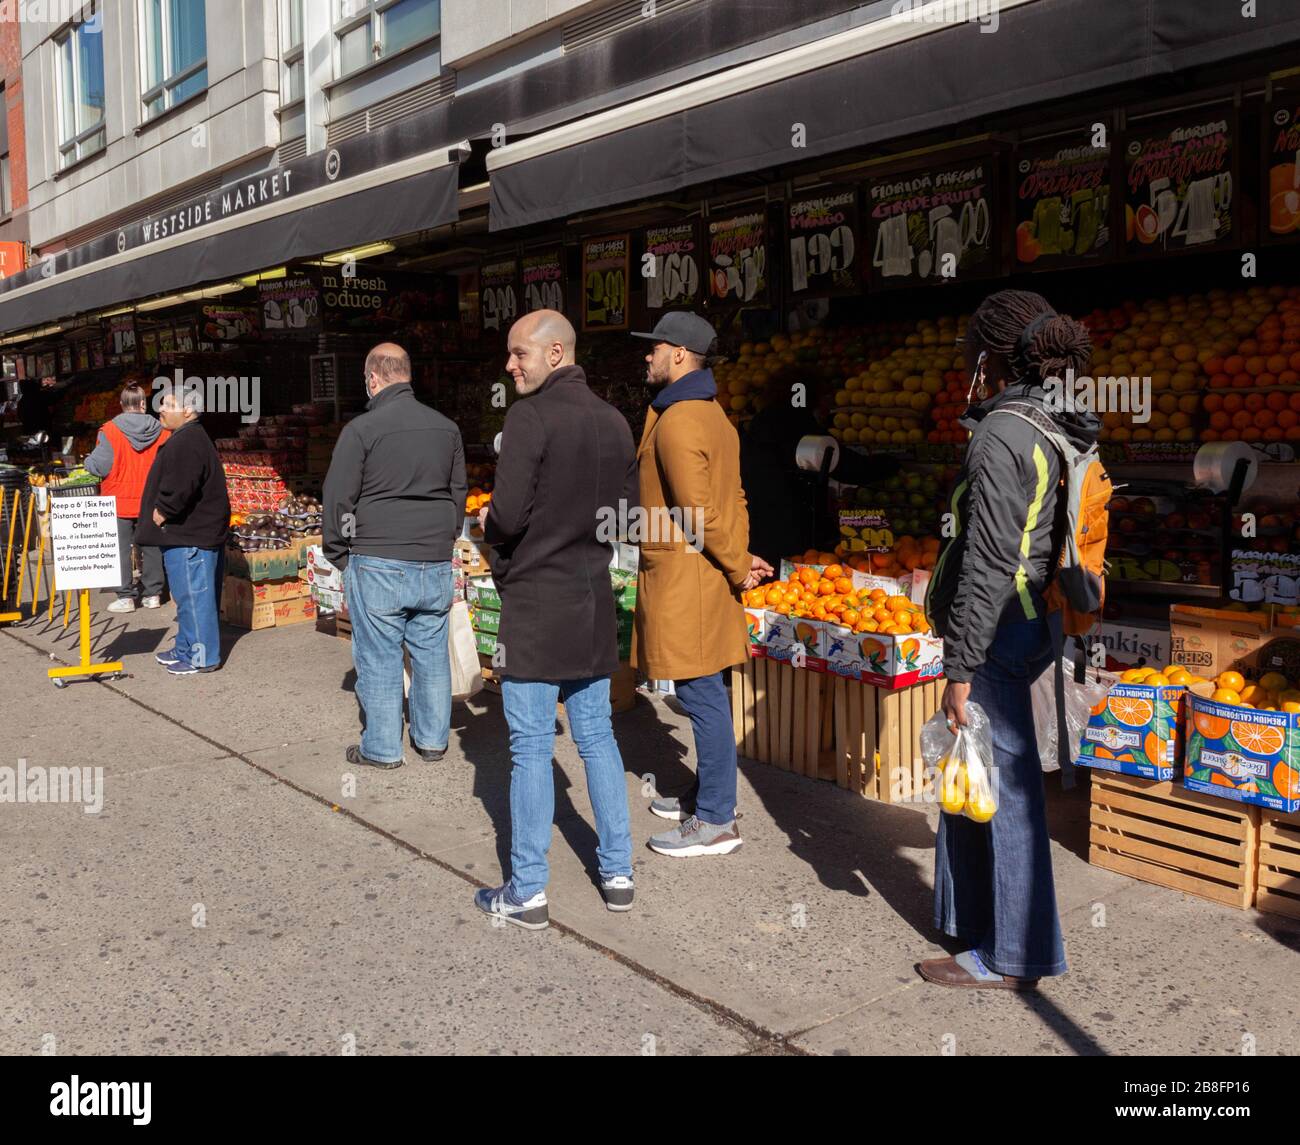 I clienti del Westside Market hanno dovuto aspettare in fila sul marciapiede a sei piedi di distanza per entrare nel negozio a causa della pandemia di coronavirus Foto Stock